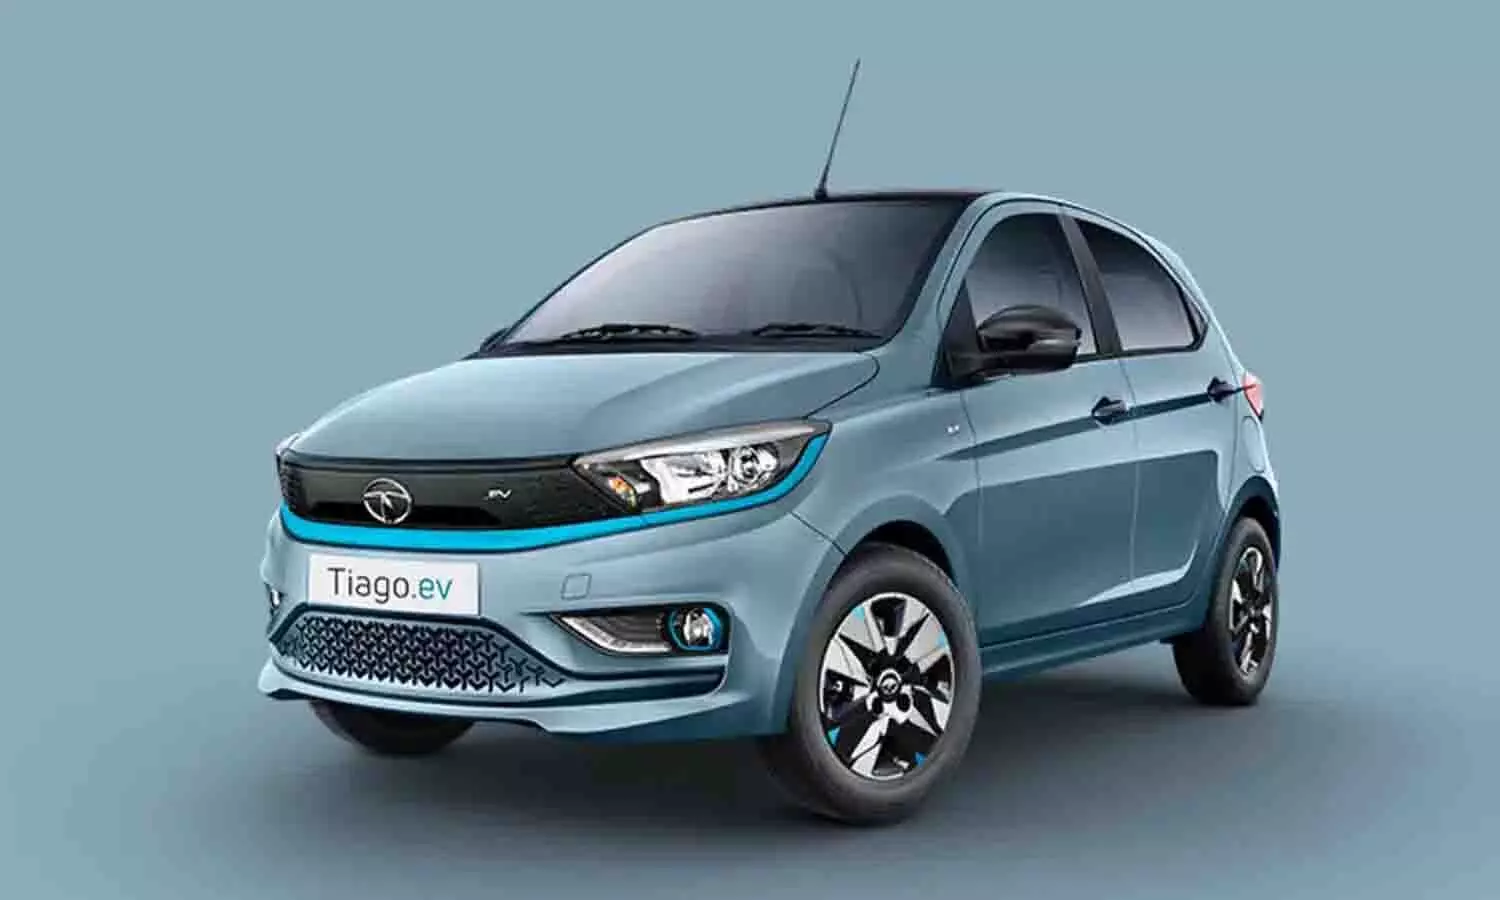 सभी कार कंपनियों की नींद उड़ा देगी नए अवतार में लांच हो रही Tata Tiago EV, खड़े है लोग ख़रीदने के लिए लाइन में